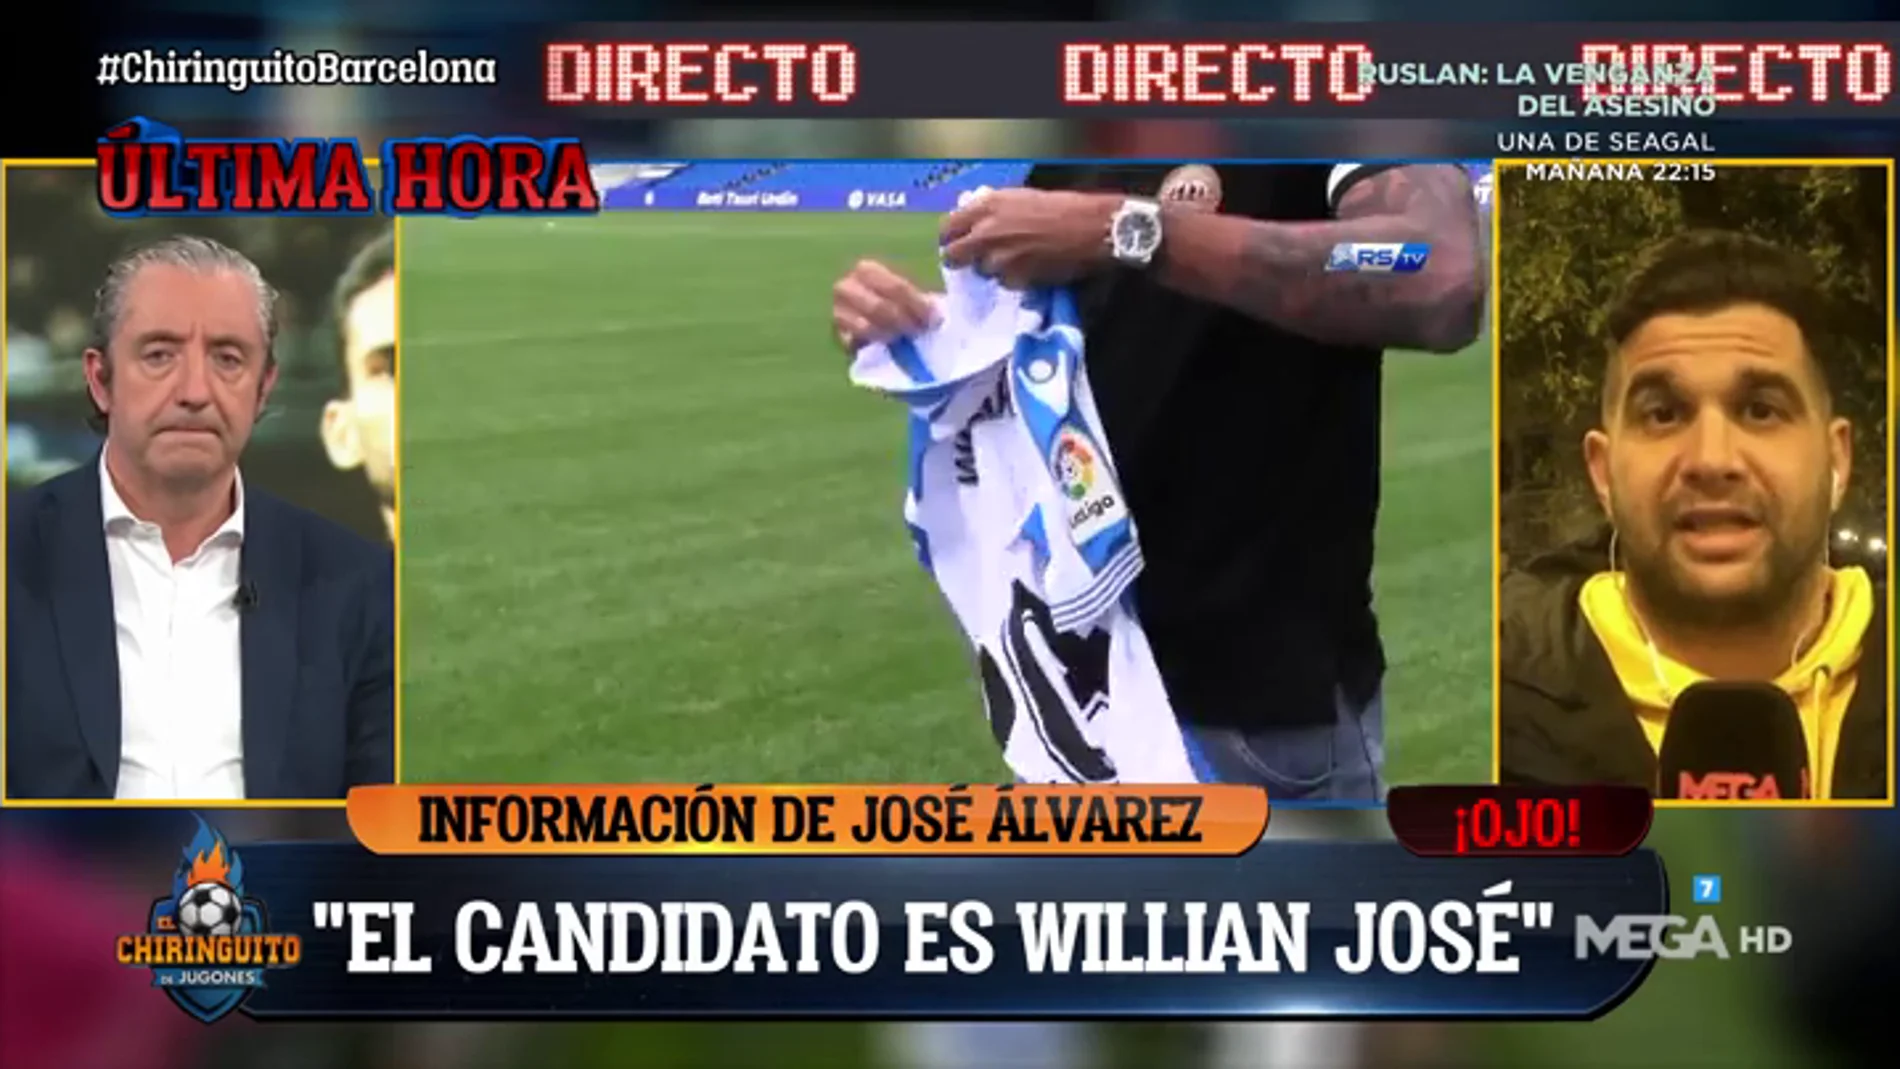 José Álvarez: "Willian José es el candidato número uno para el Barça"